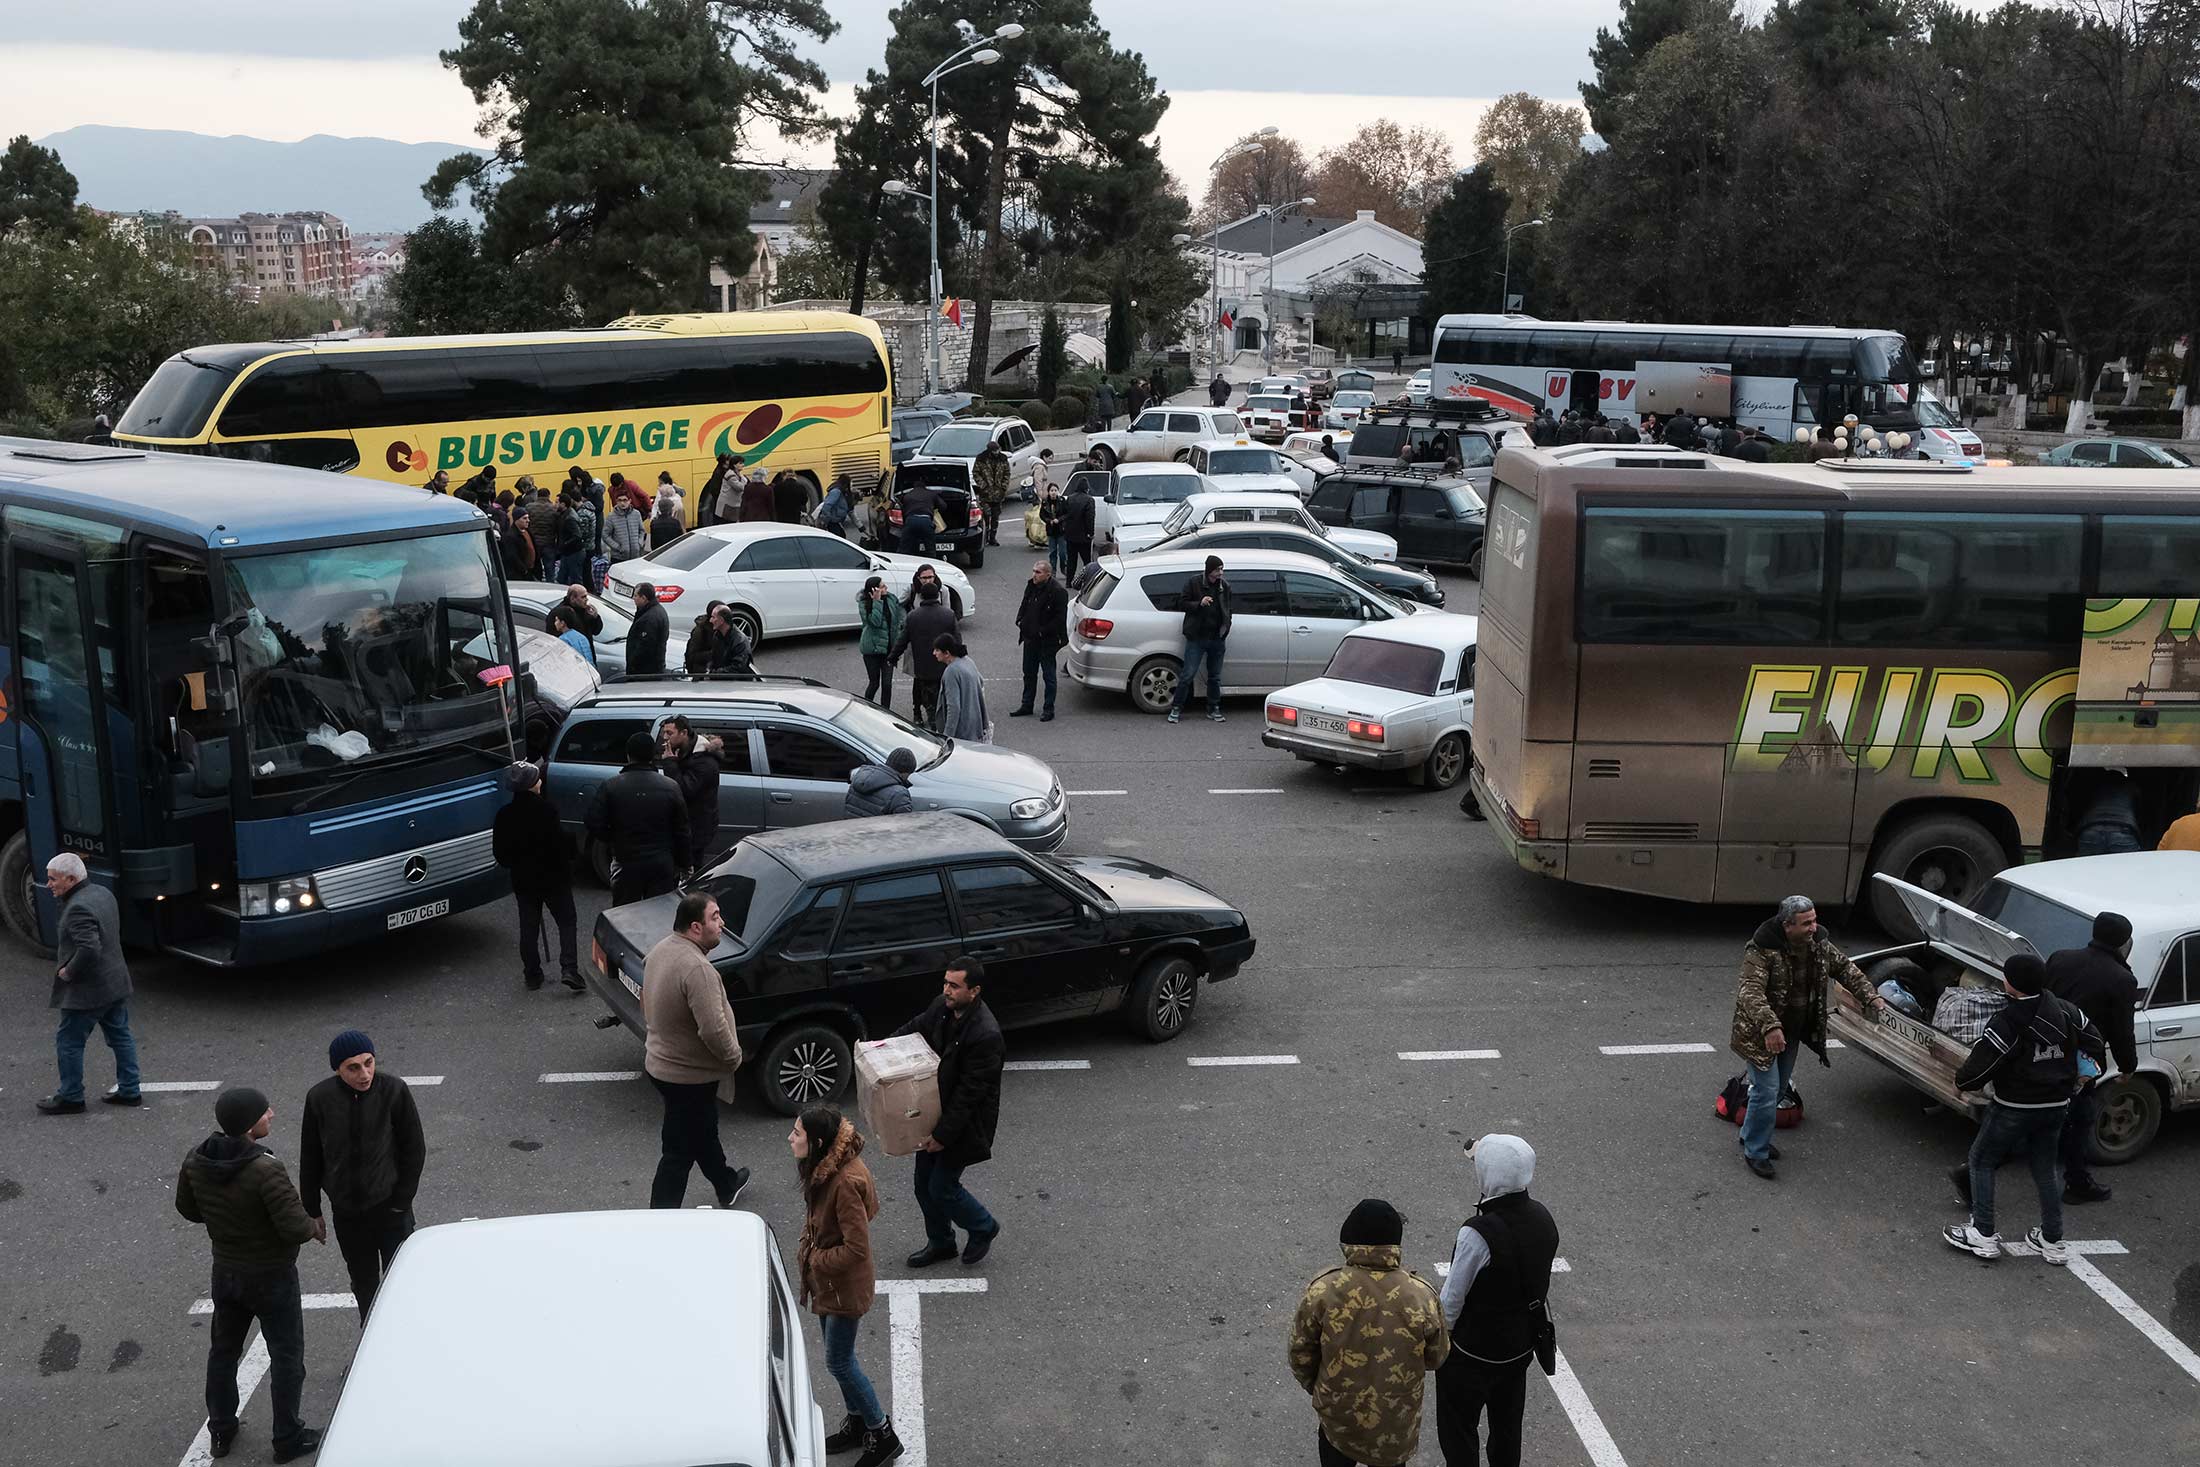 Ամեն օր, վերադարձող փախստականներին տեղափոխող, տասնյակ ավտոբուսներ են ժամանում Ստեփանակերտ: Հաղորդվու ...